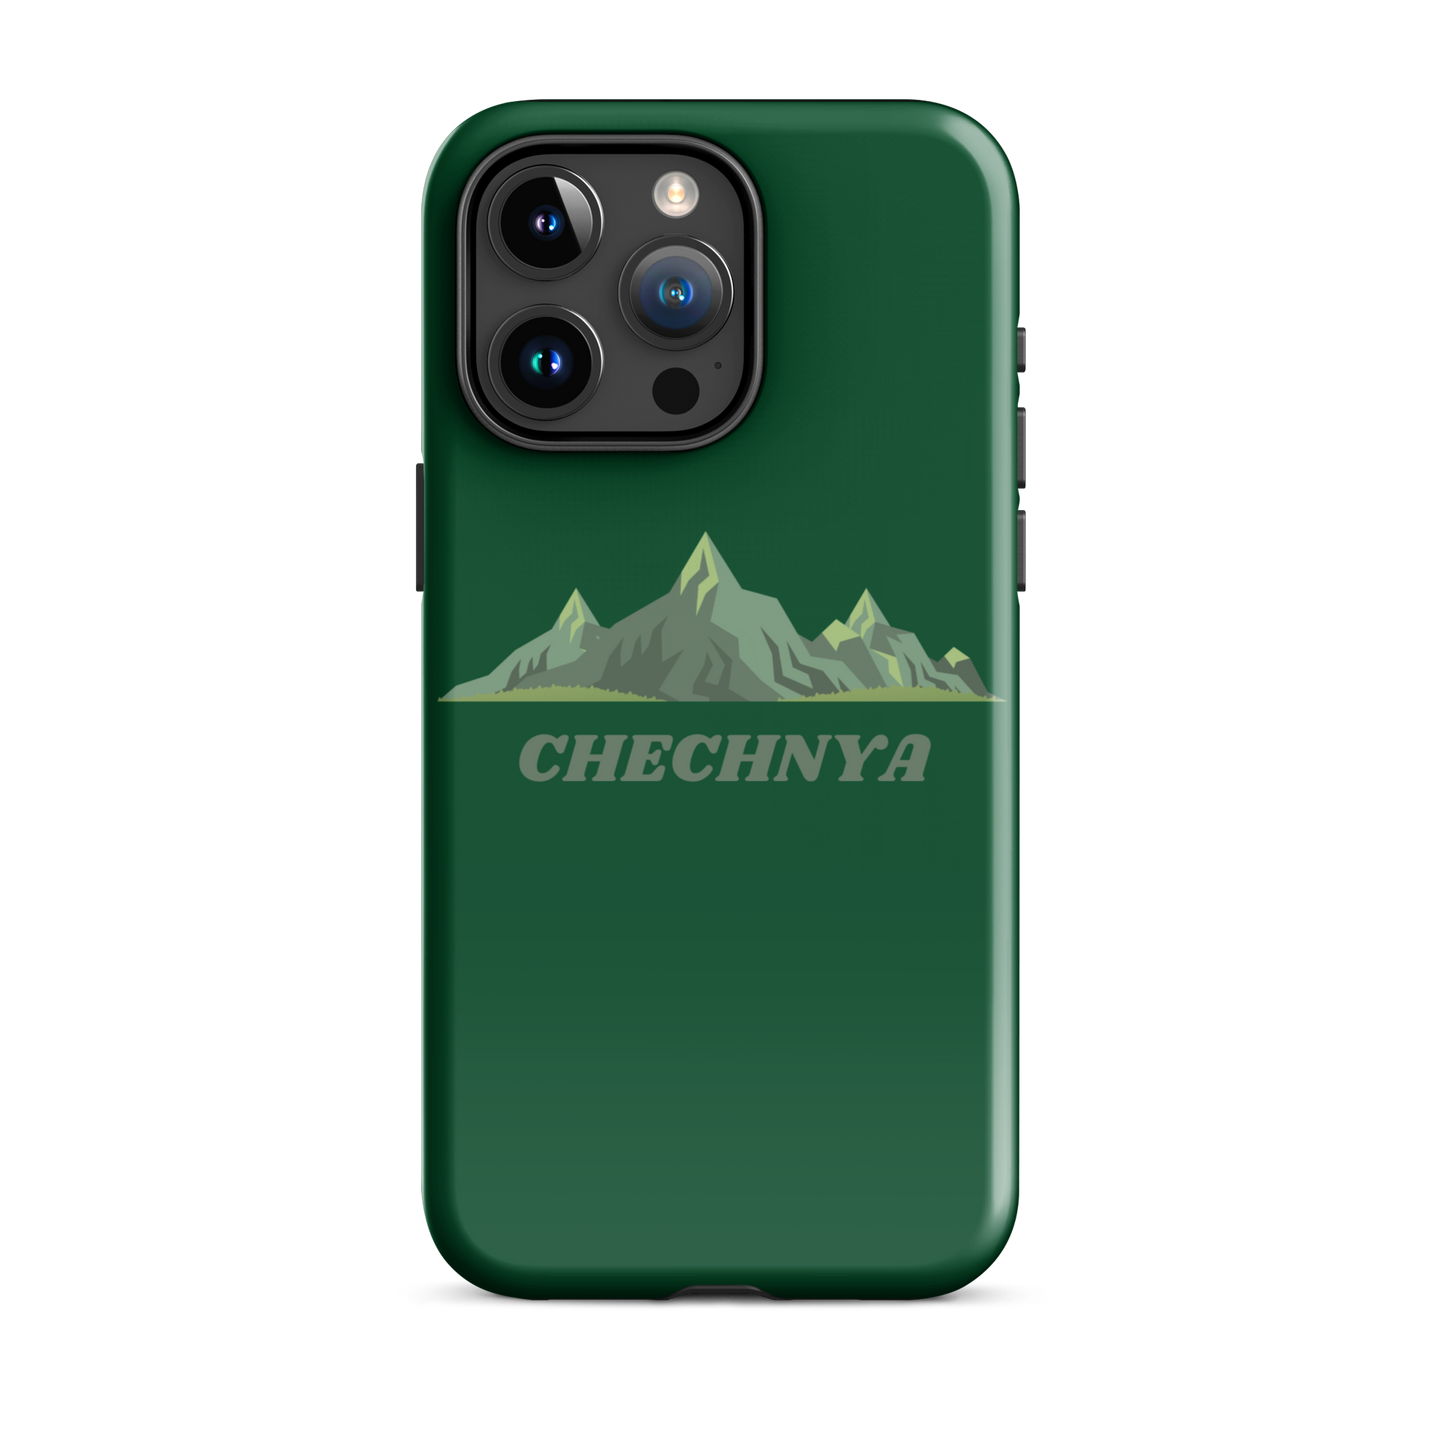 CHECHNYA - Green